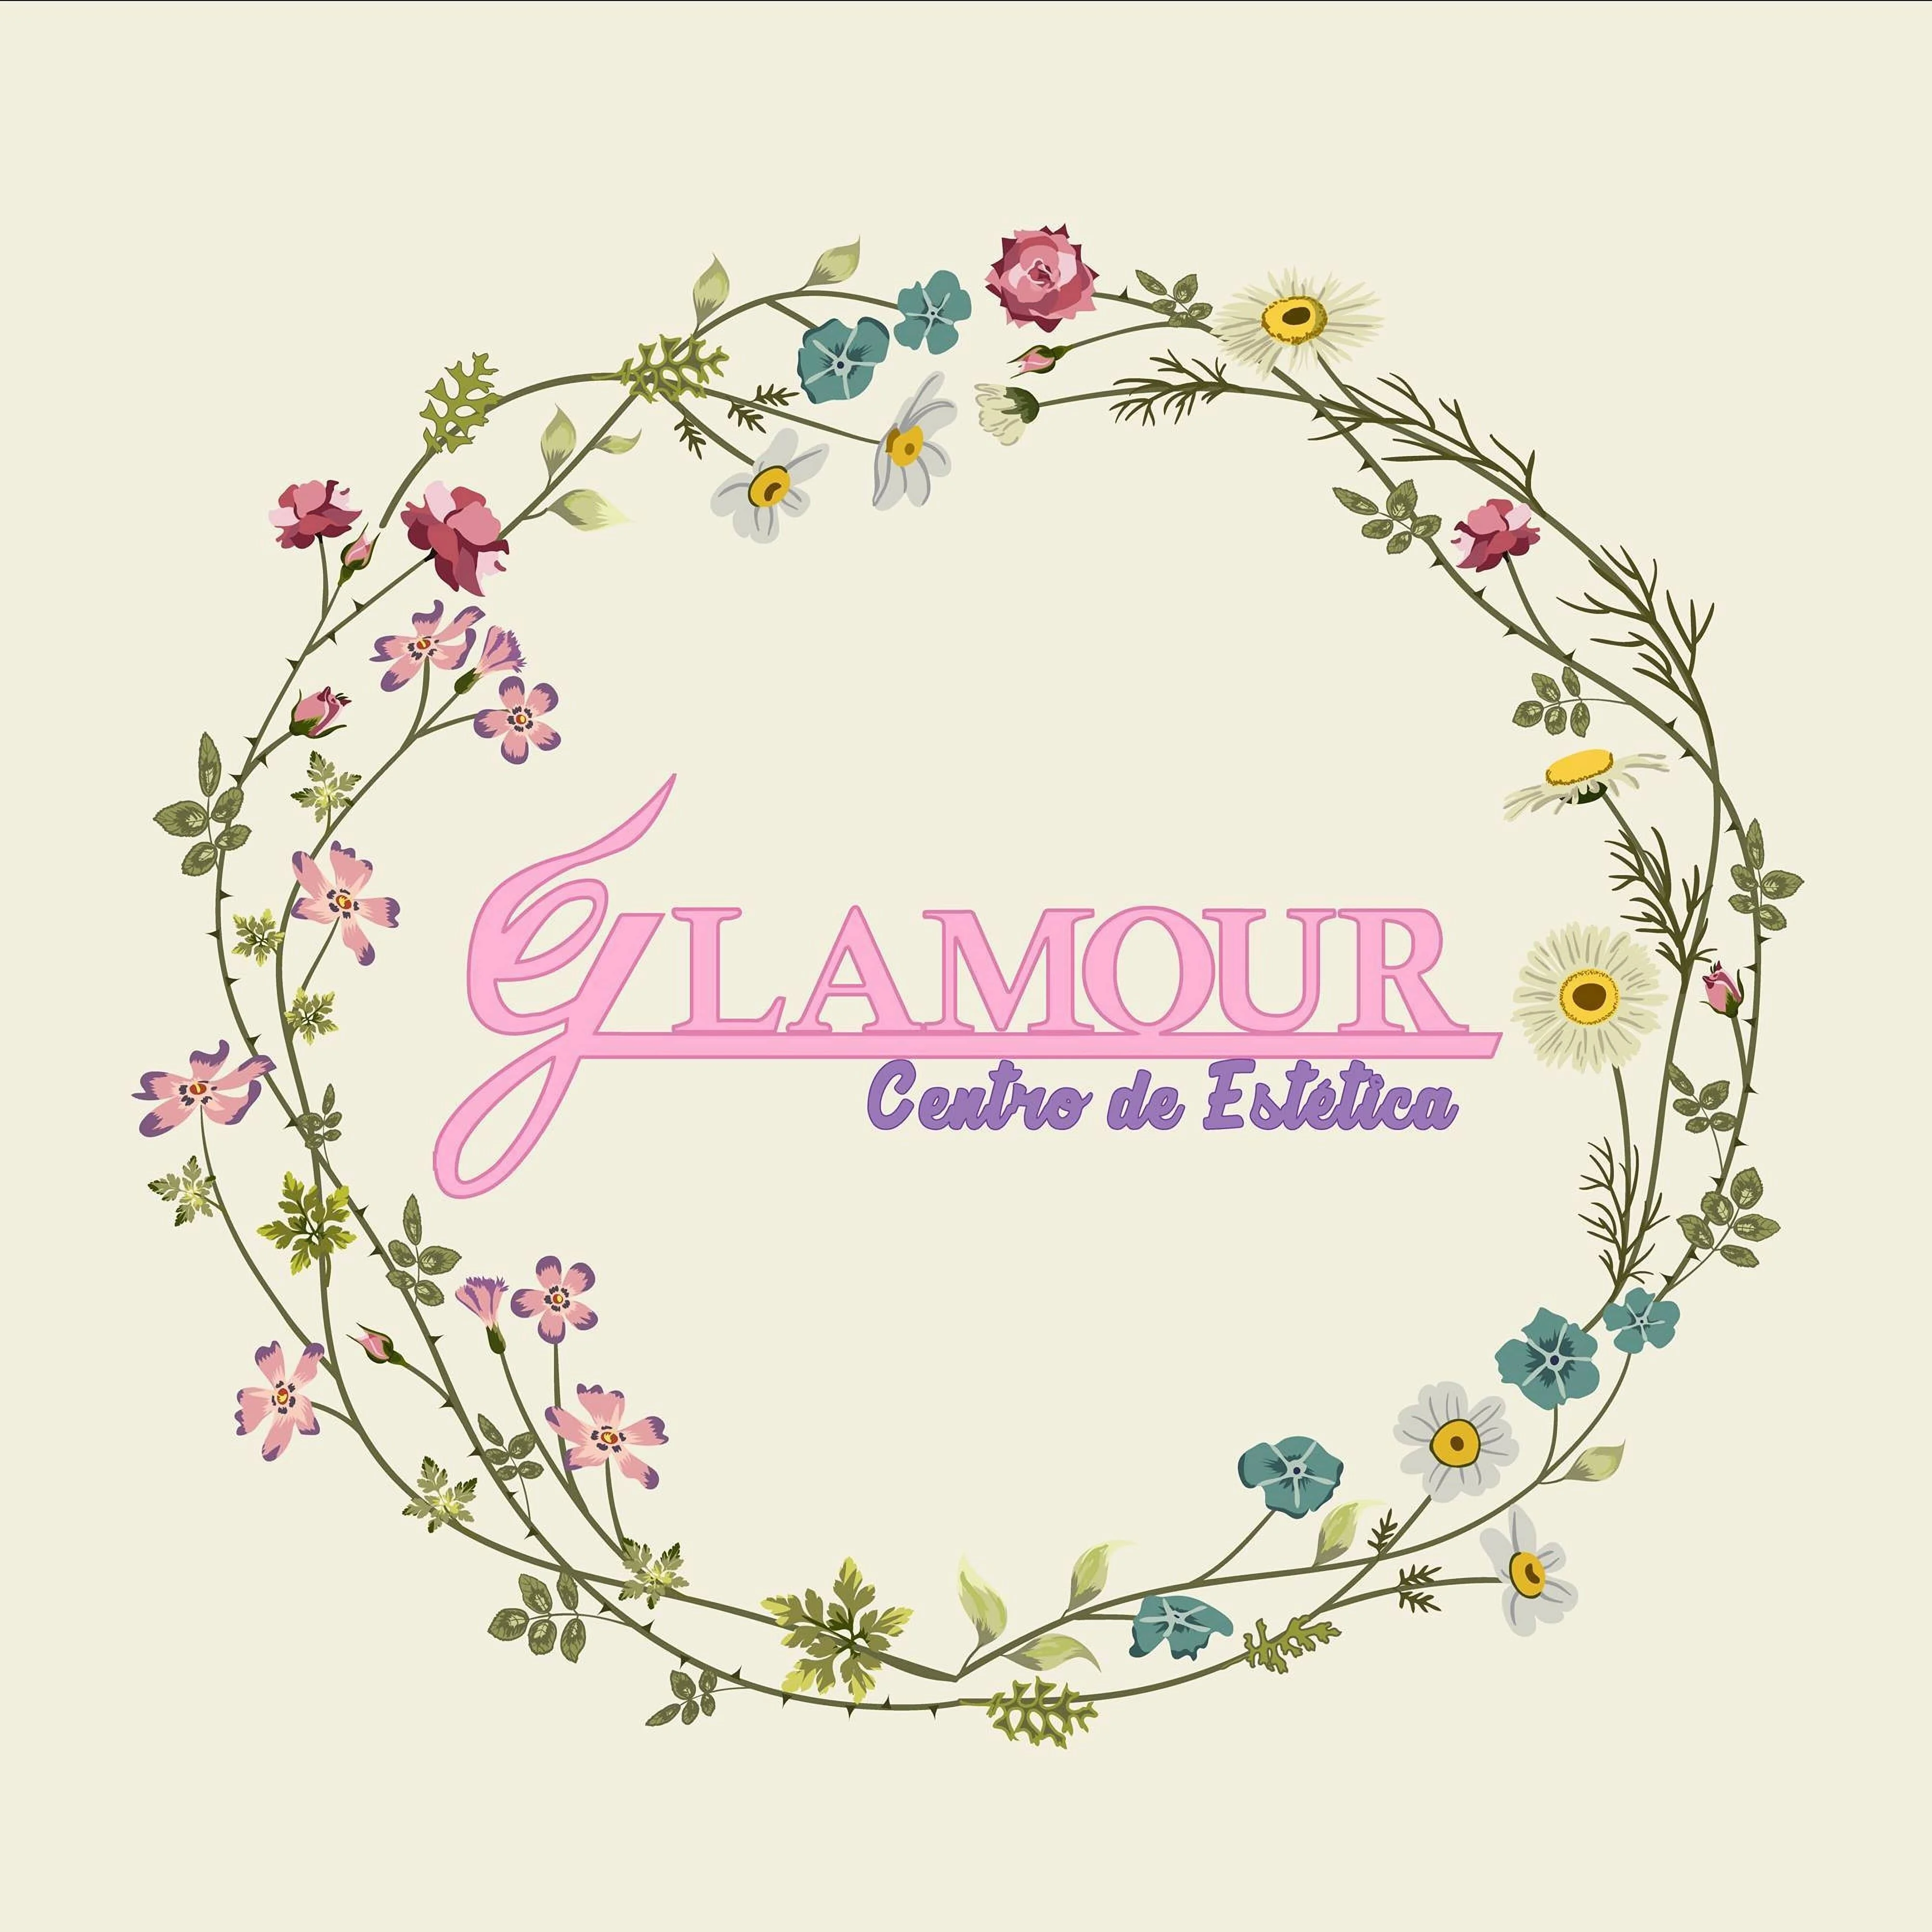 Glamour Centro de Estética-1165